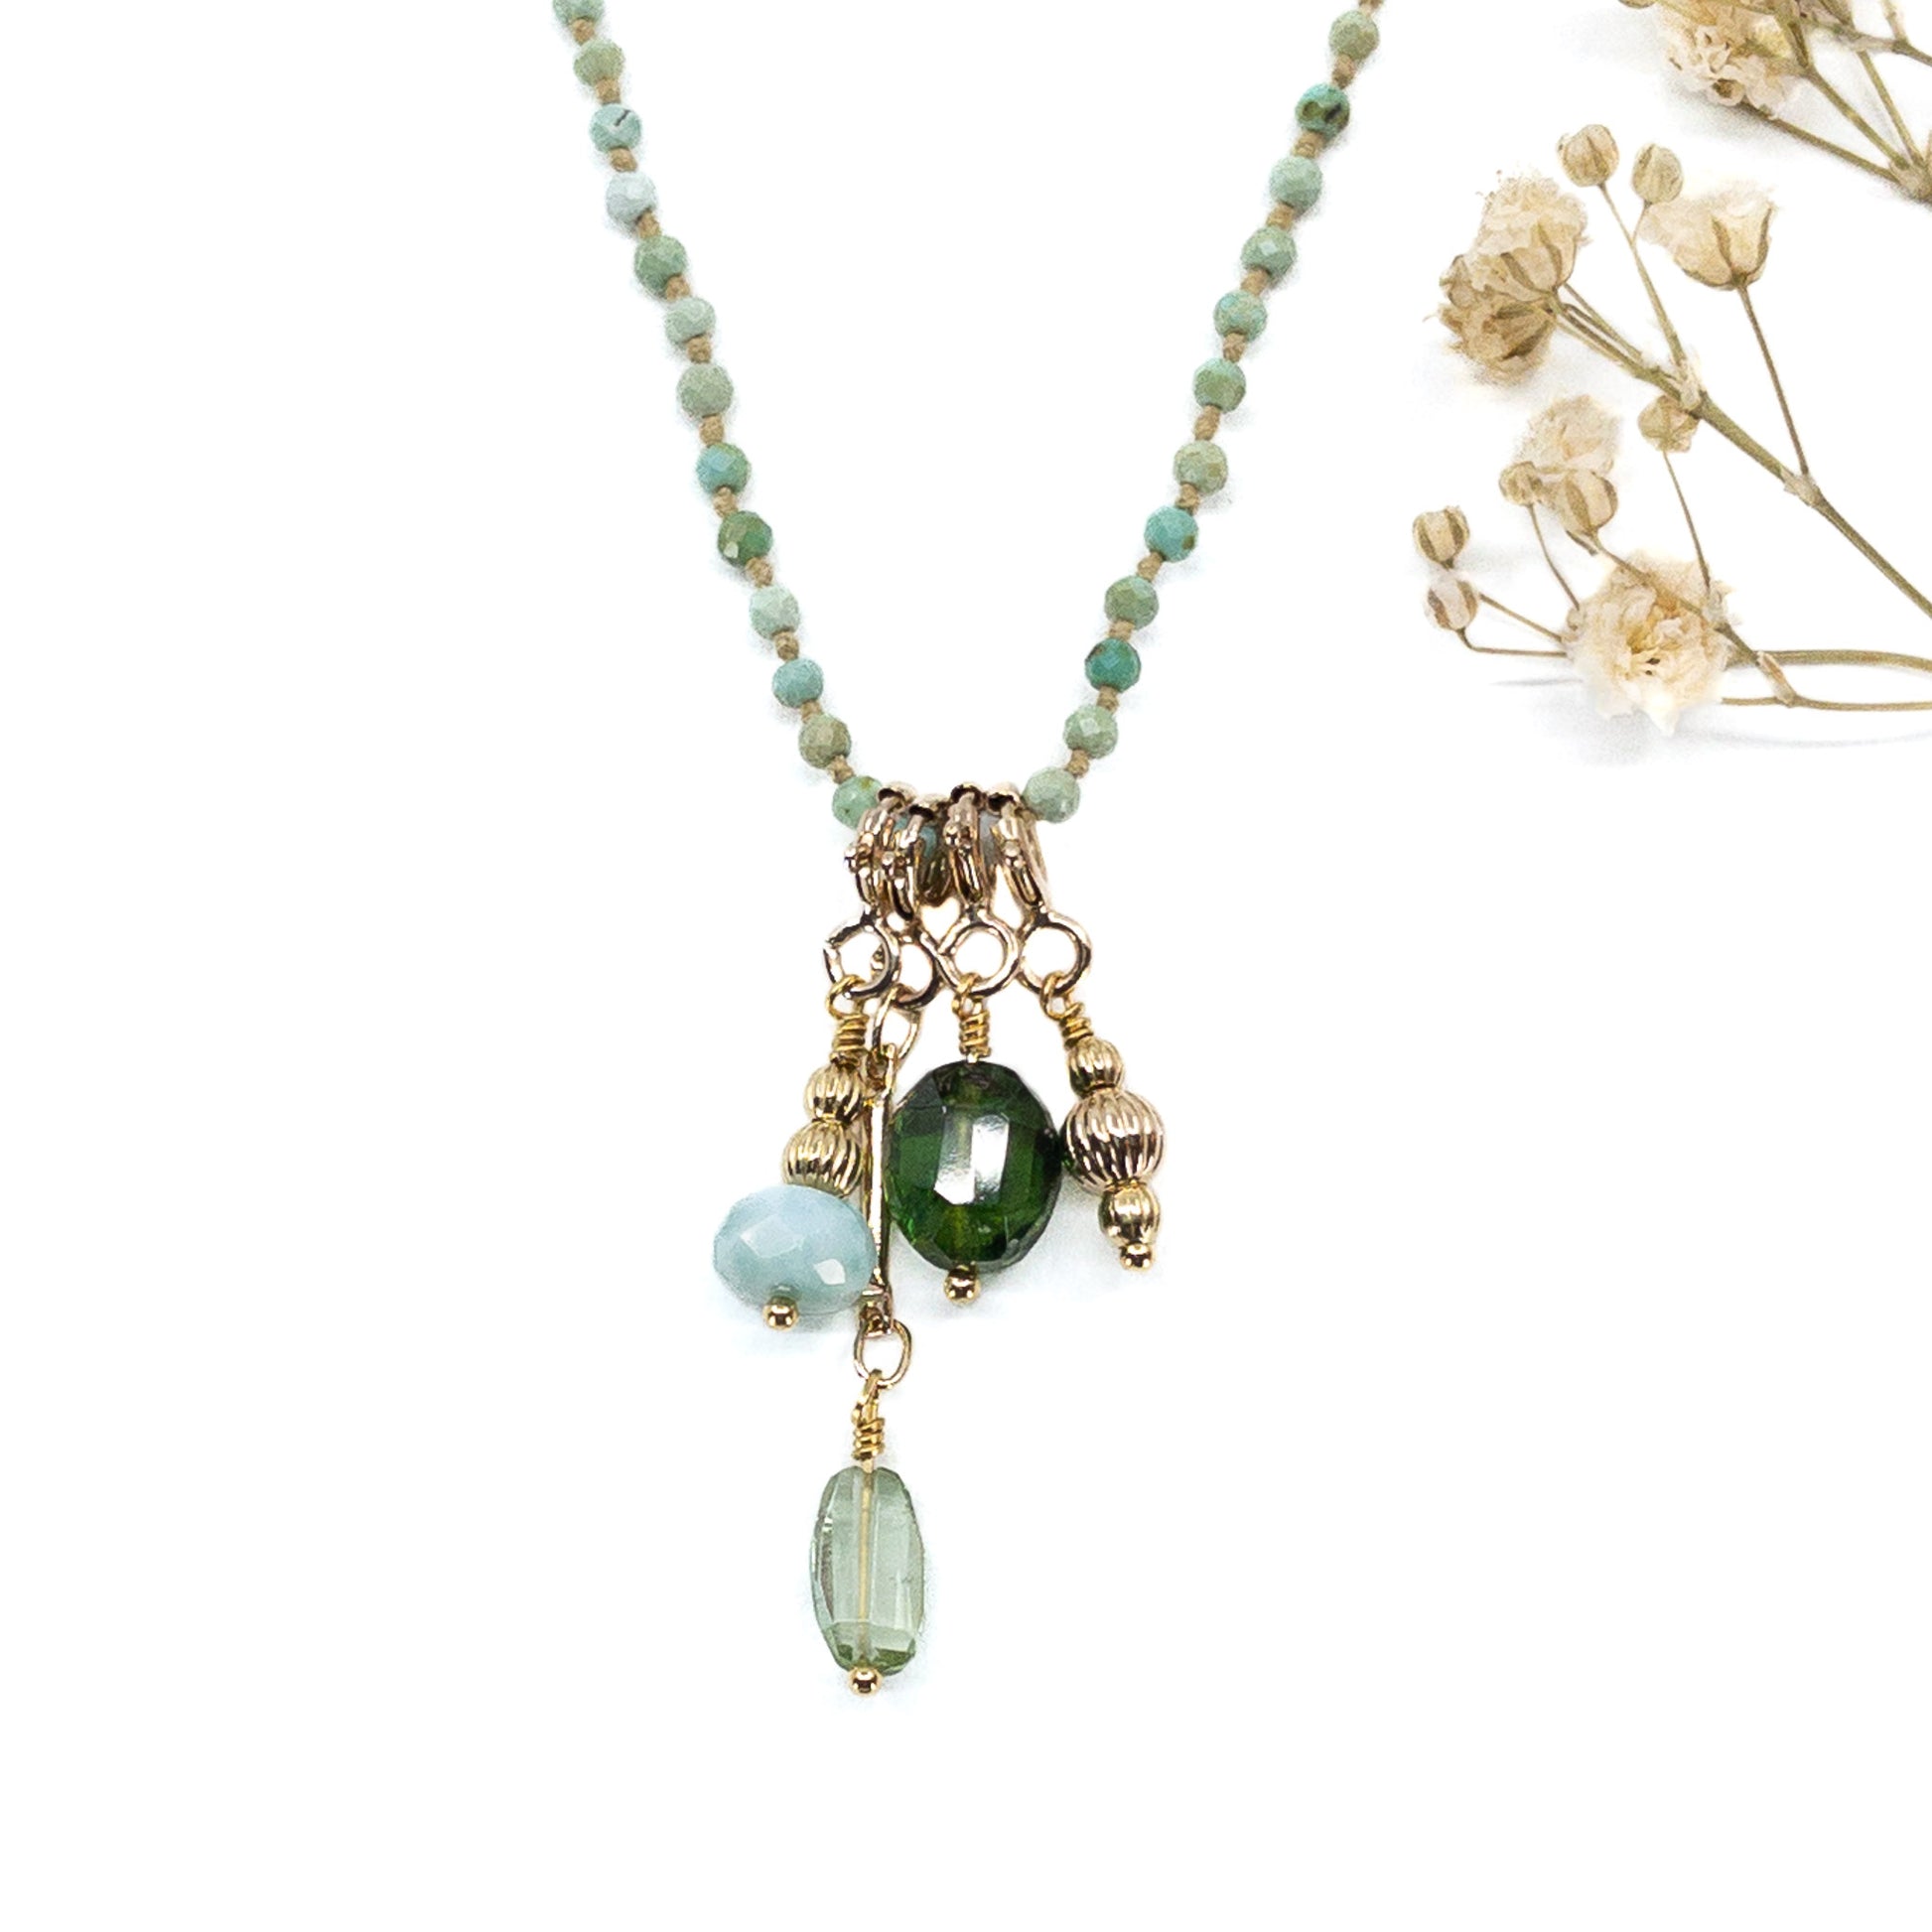 Collier 36 cm en Turquoise aux tons verts et 4 charms composés de différentes pierres fines naturelles et d'un pendentif plaqué or